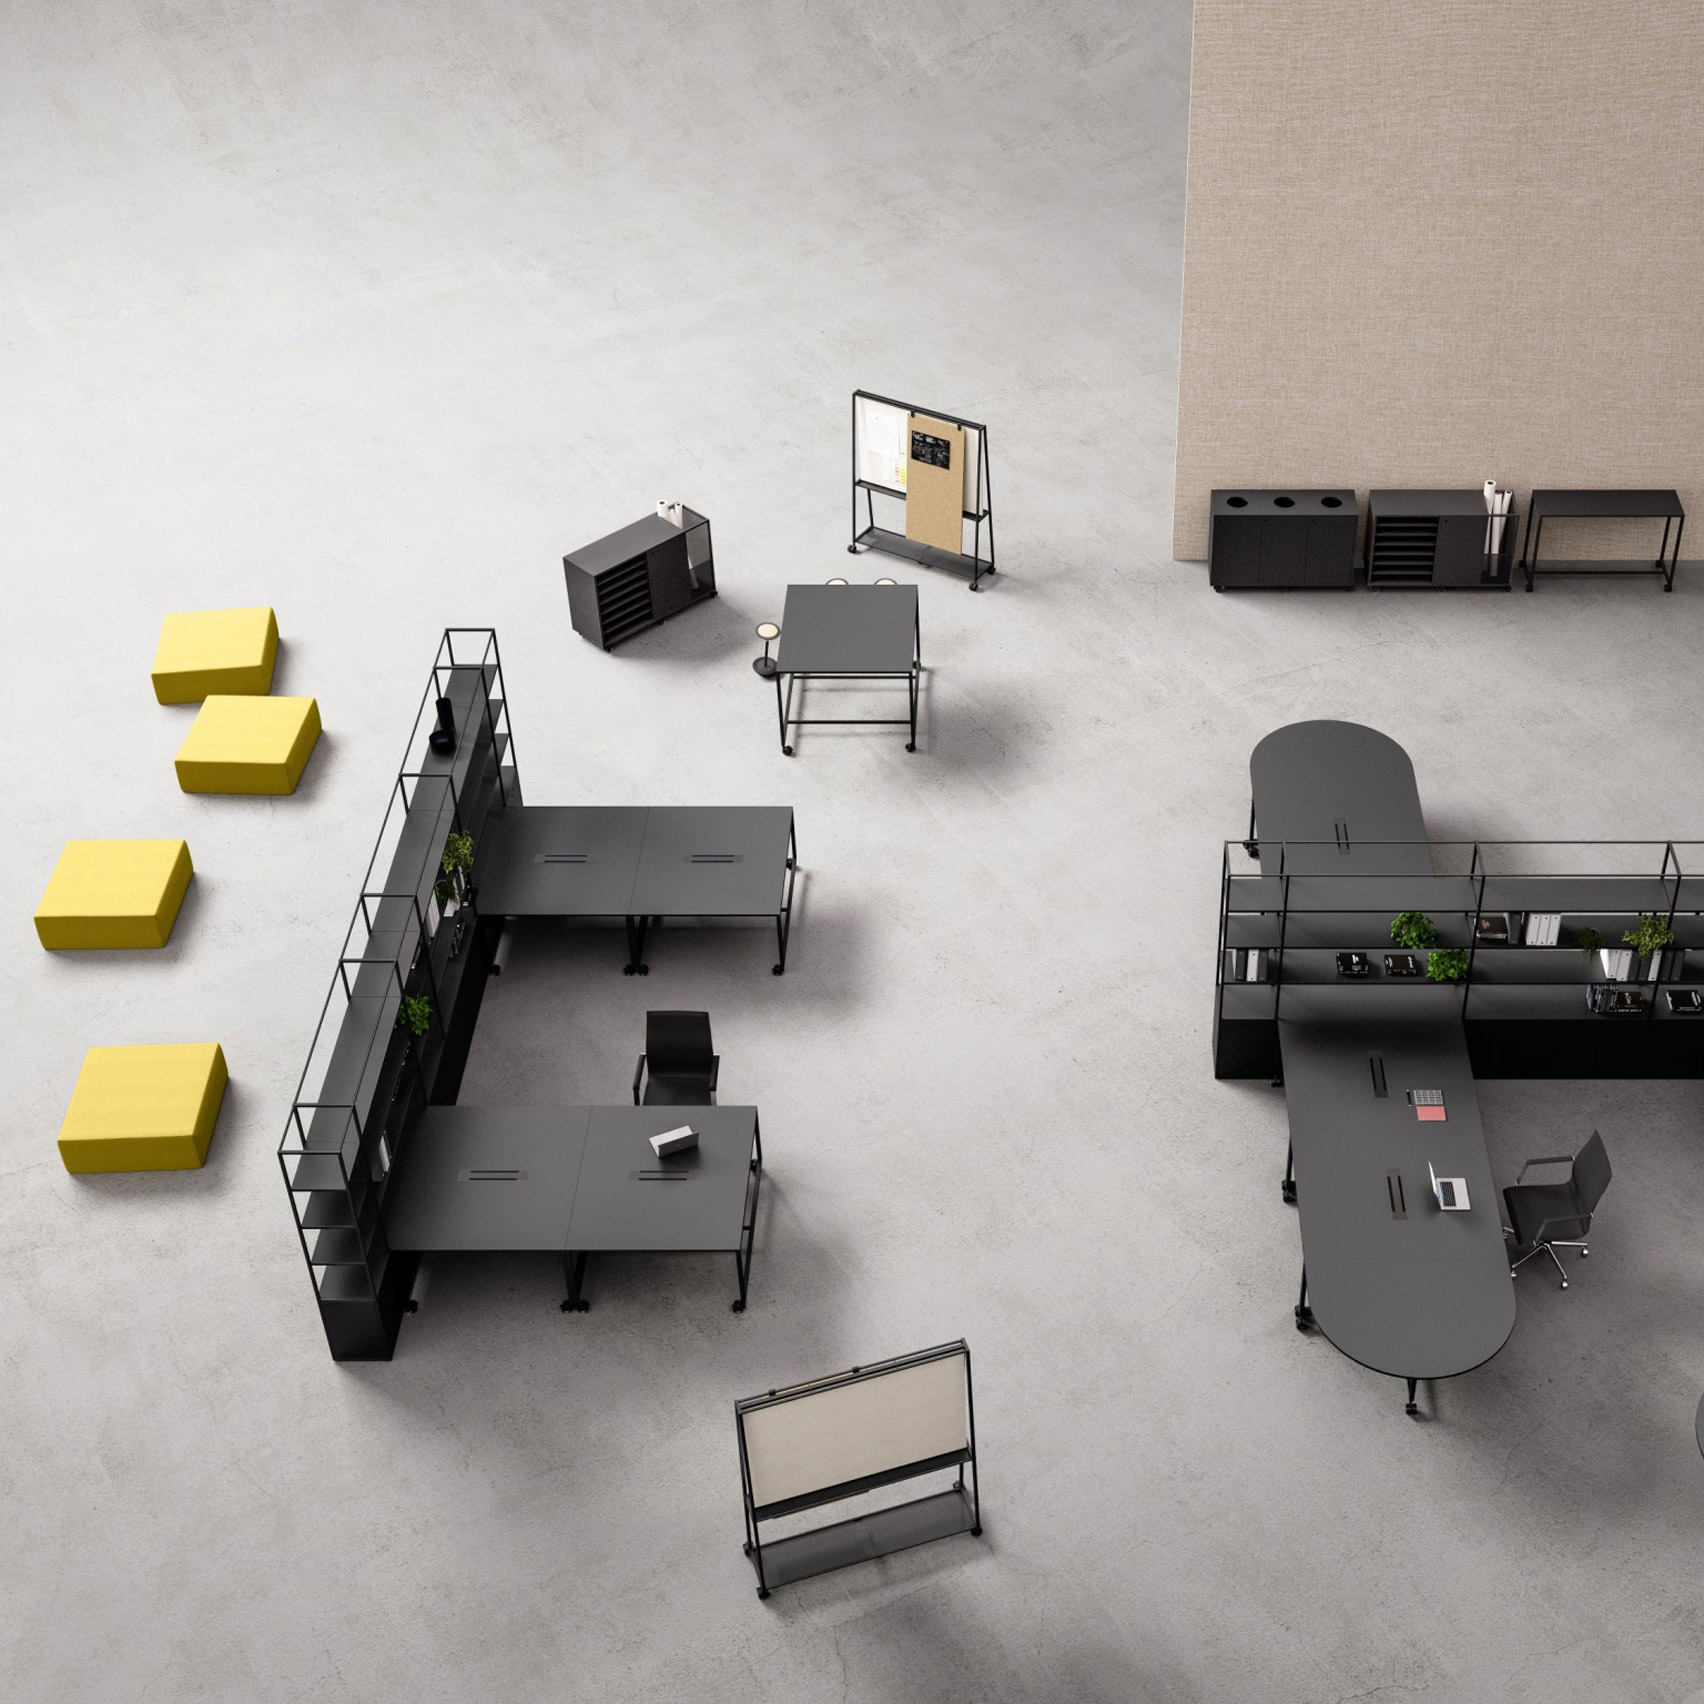 gensler designs modular furniture system to enable